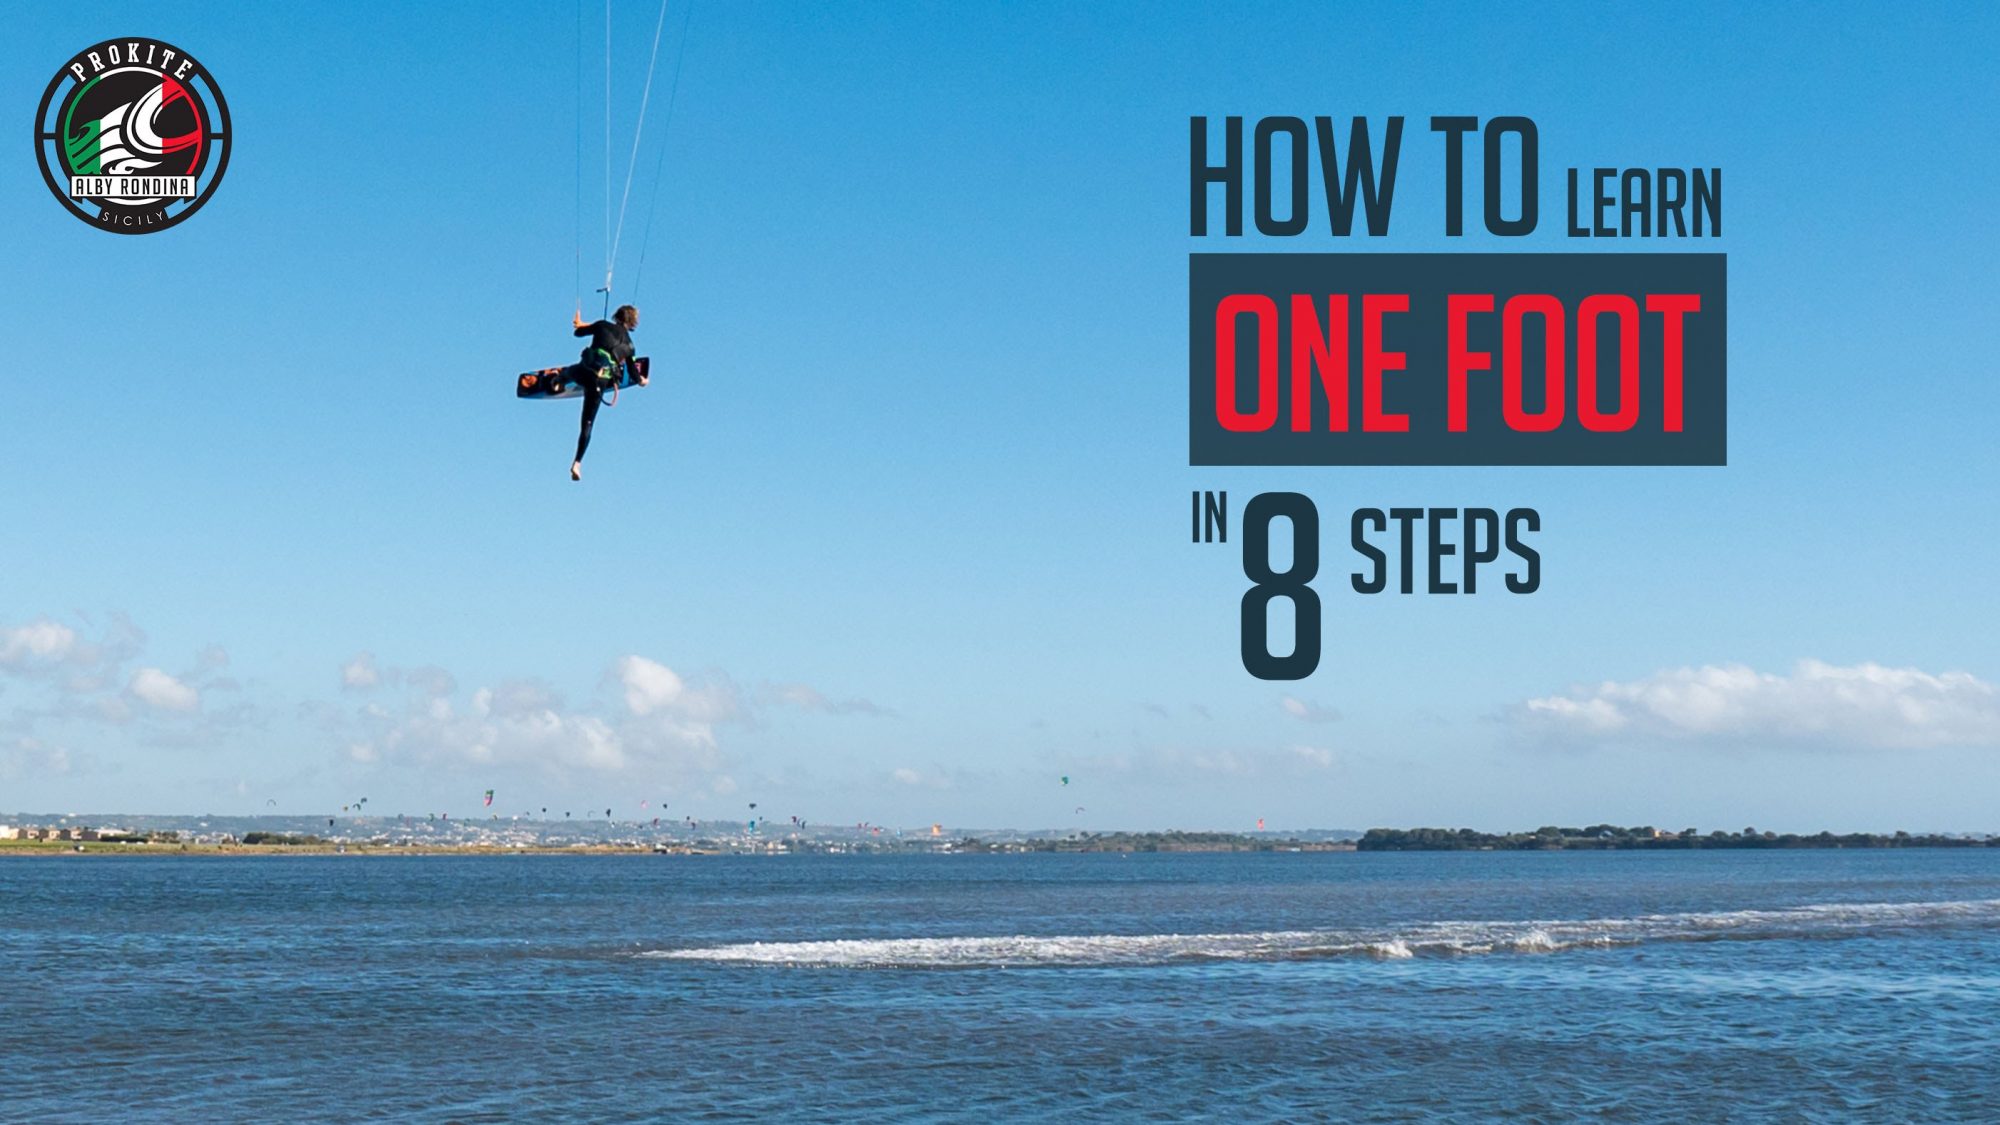 how to video one foot jump - How to video: One foot jump